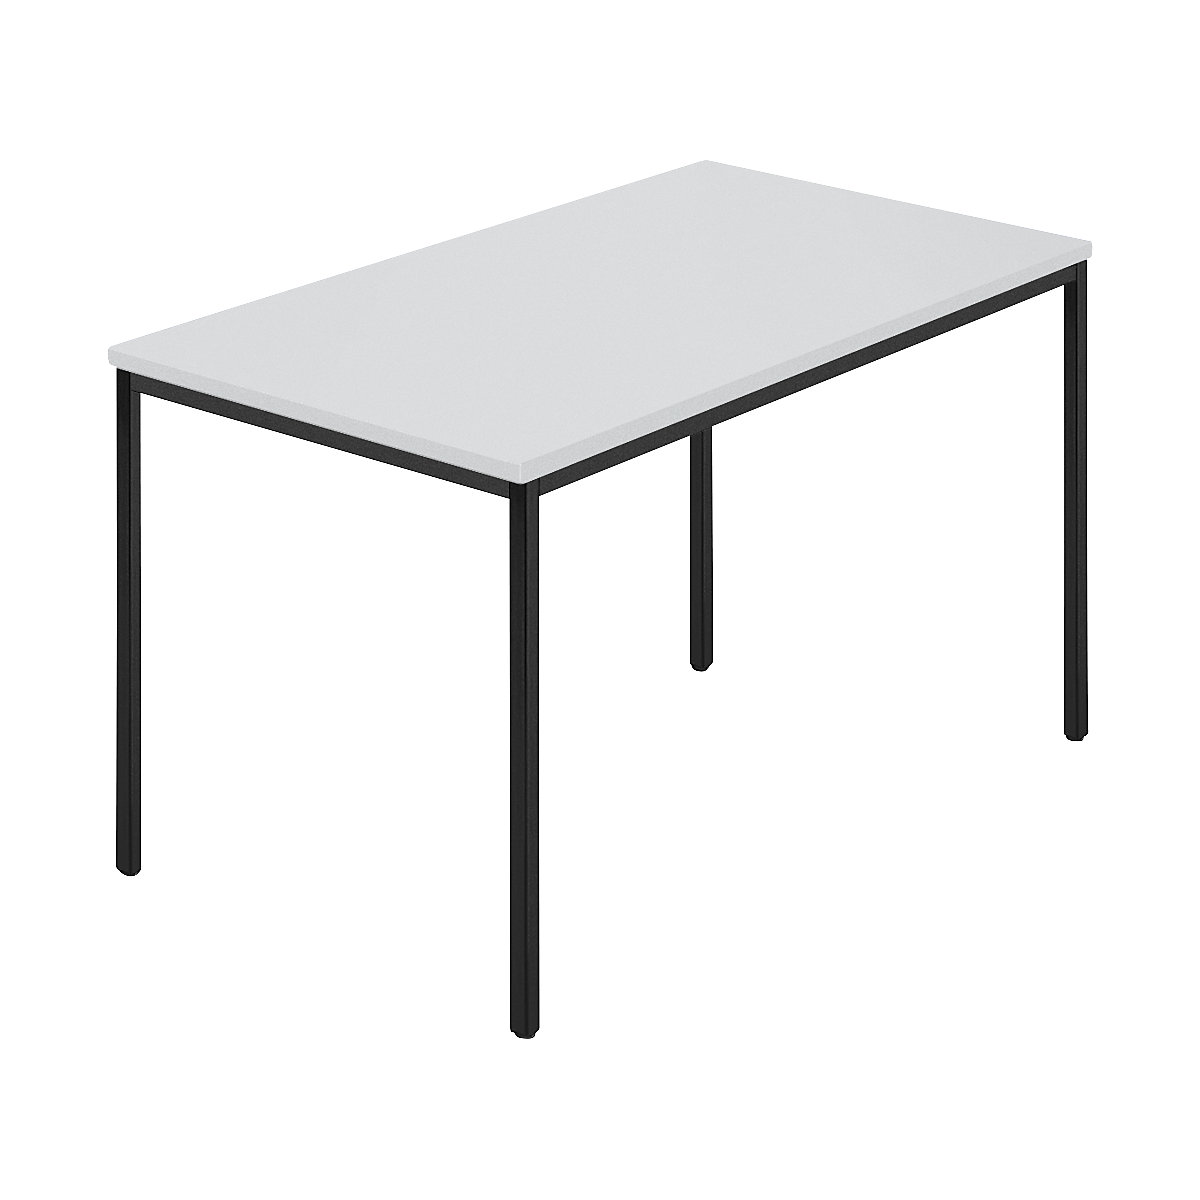 Rechthoekige tafel, vierkante buis met coating, b x d = 1200 x 800 mm, grijs / antracietkleurig-4